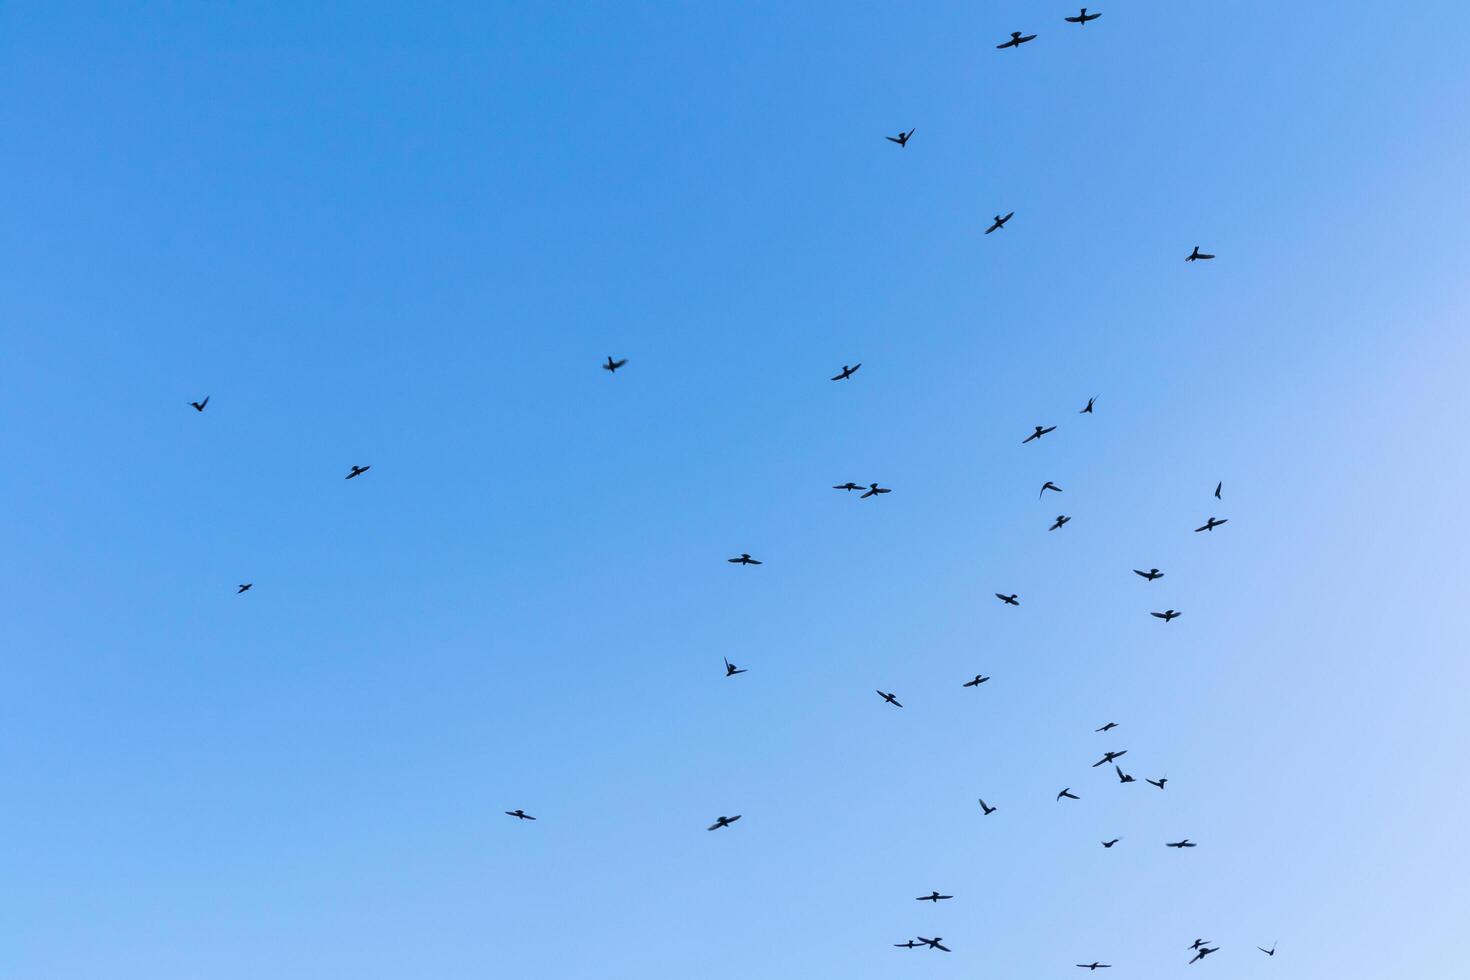 os pássaros estão voando no céu azul, imagem de fundo do céu foto